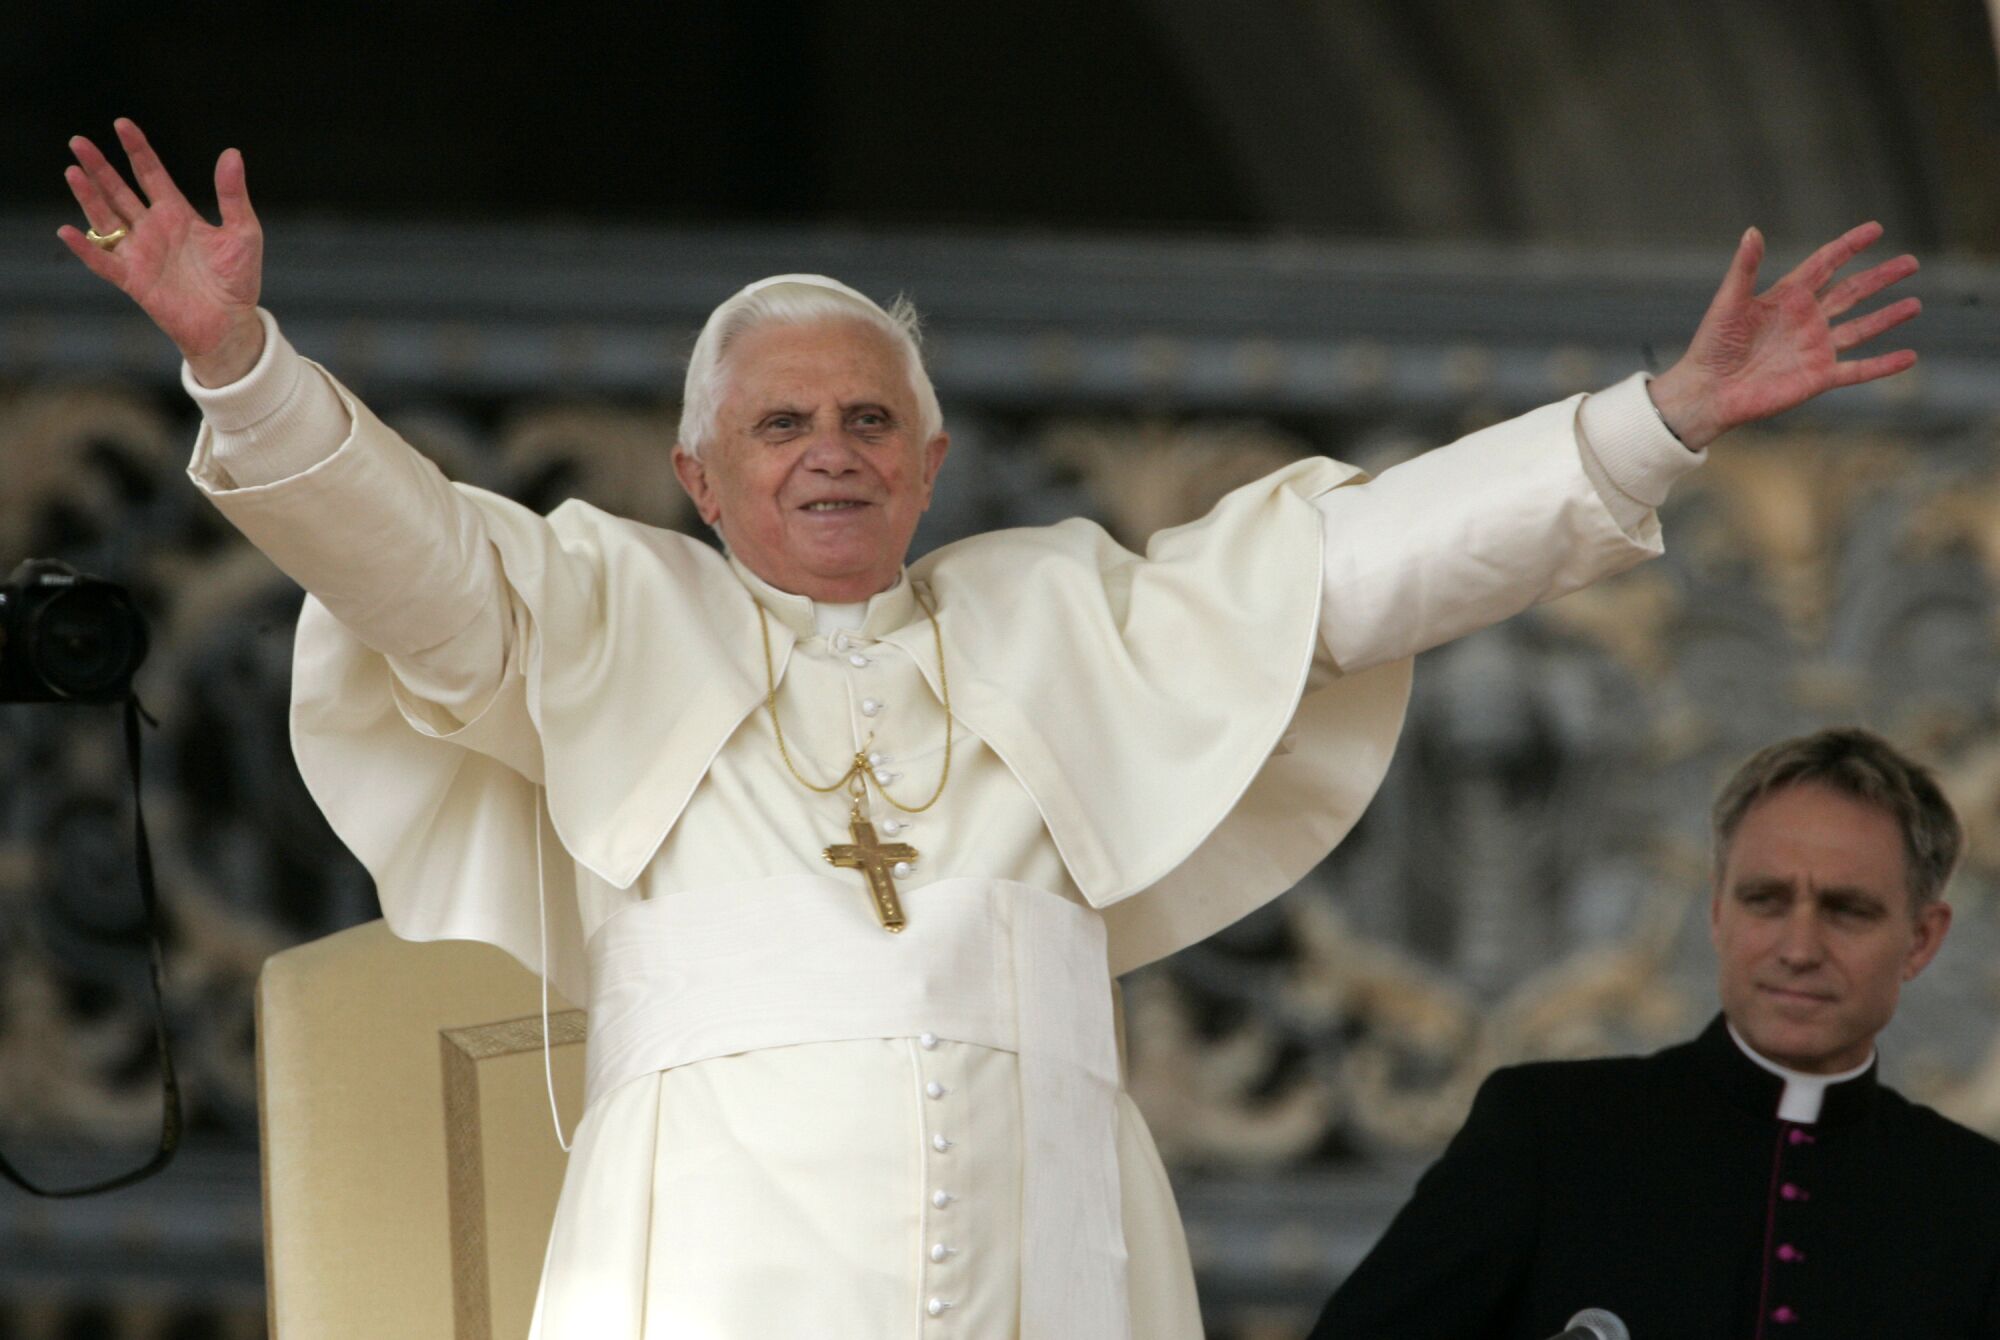 پاپ بندیکت شانزدهم در حالی که مرد دیگری به او نگاه می کند، دستانش را بالا می برد.